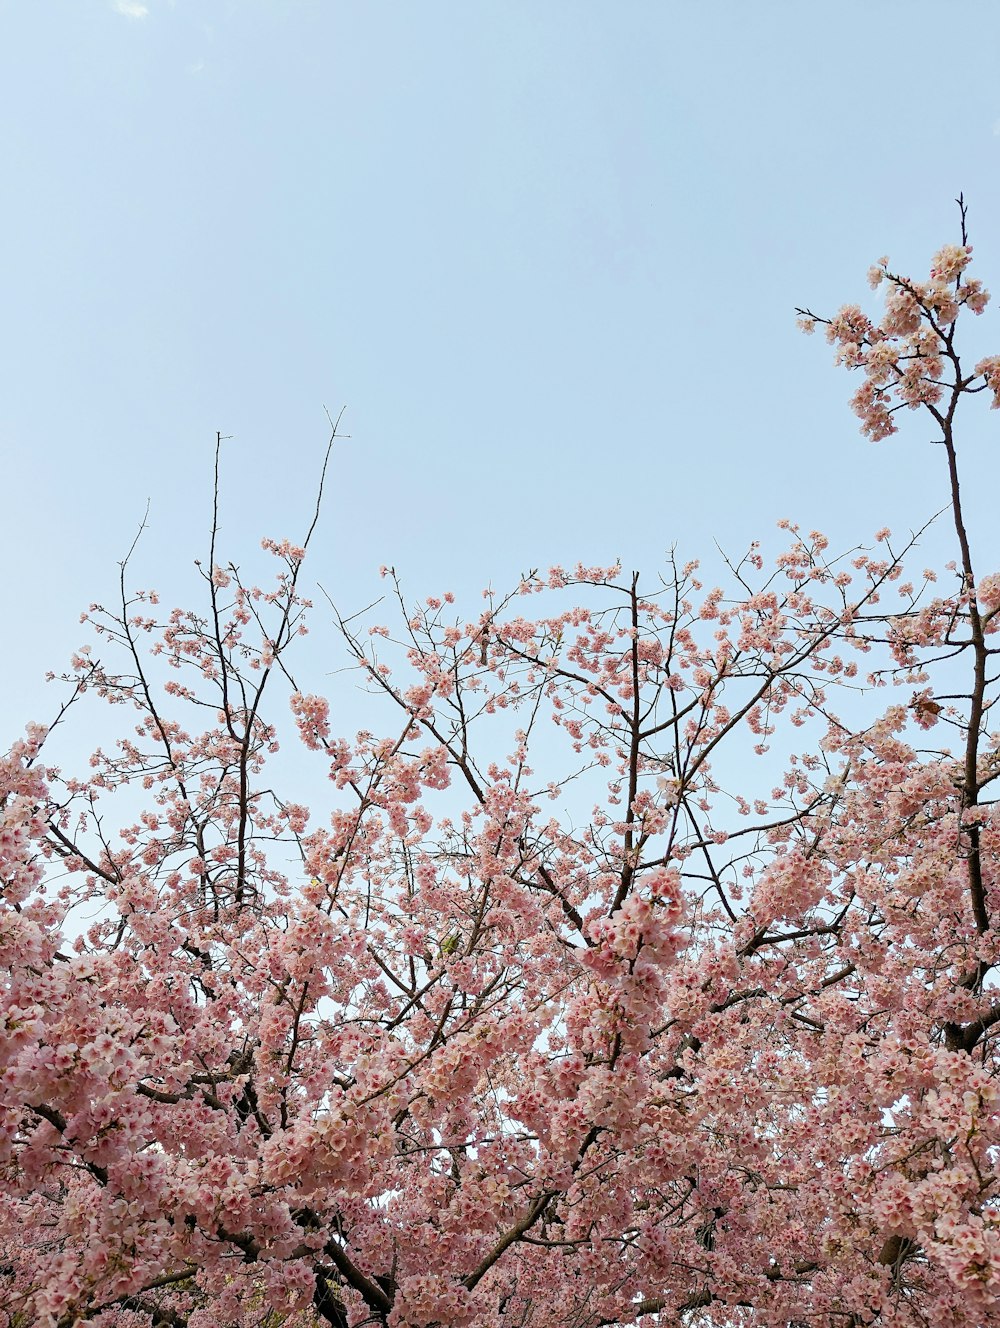 푸른 하늘 앞에 분홍색 꽃이 많은 나무